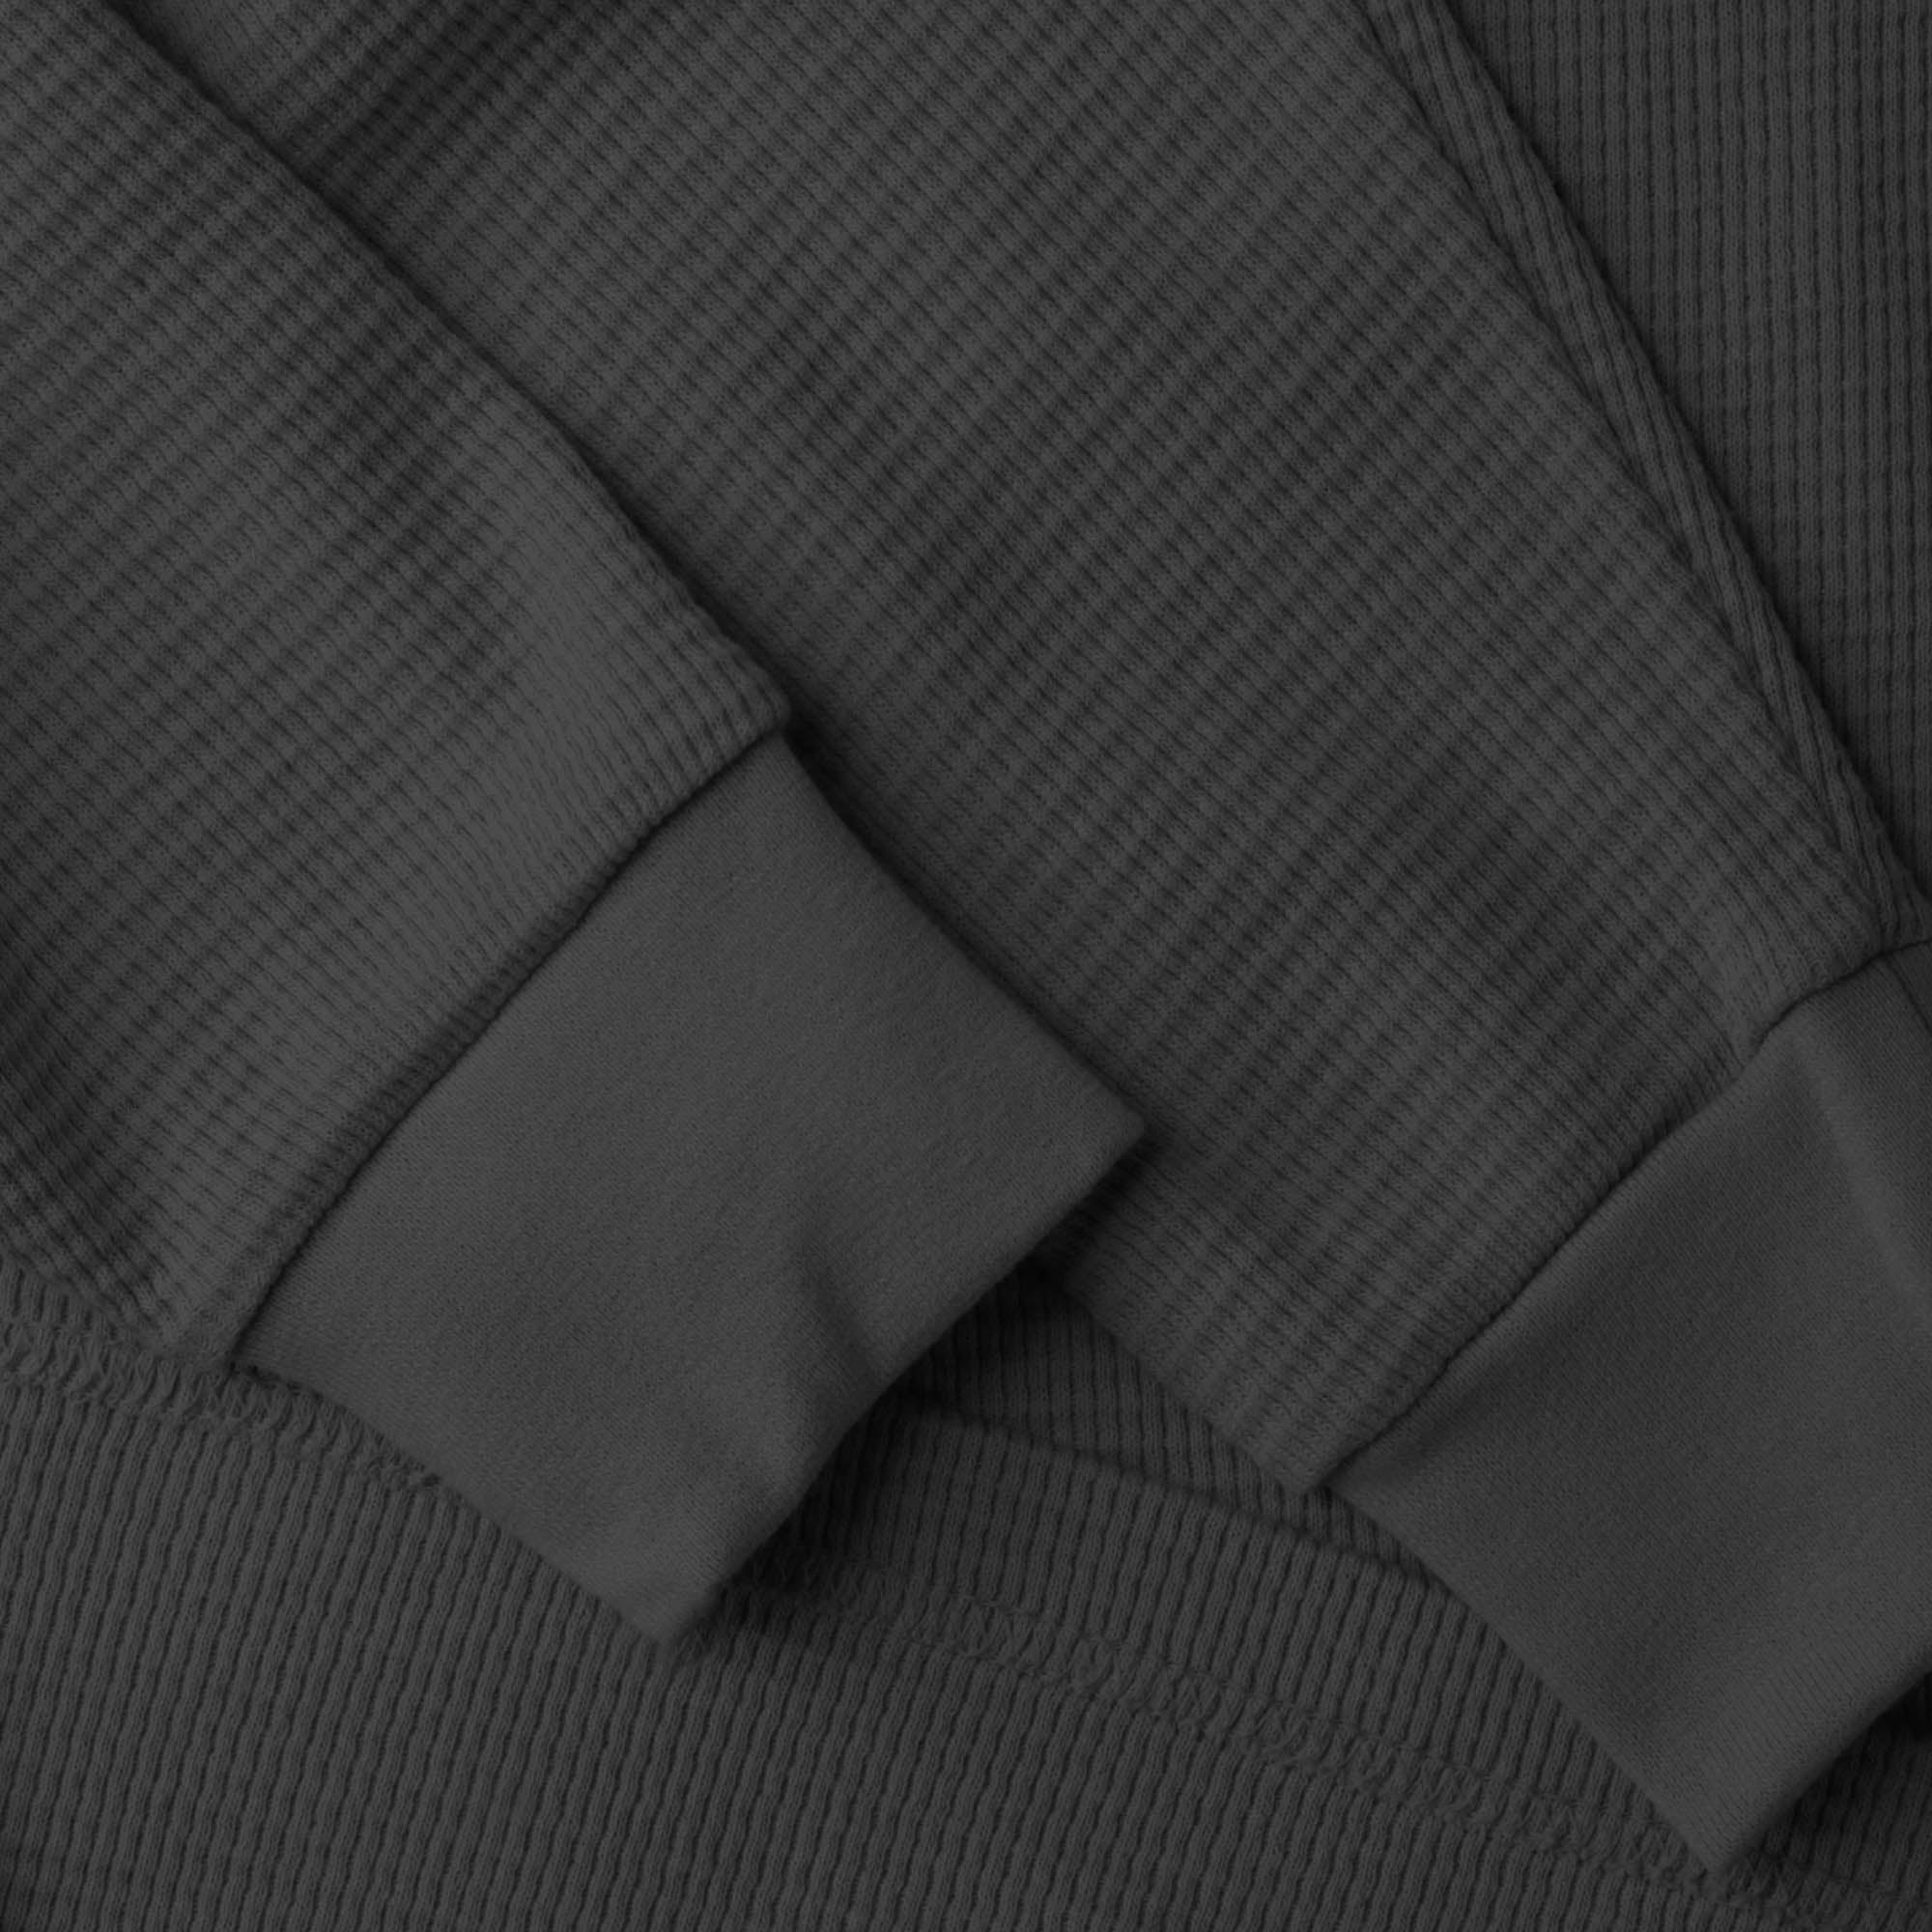 thermal shirt_thermal long sleeve_mens thermal shirt_long sleeve thermal shirts_mens thermal long sleeve_thermal clothing mens_Charcoal